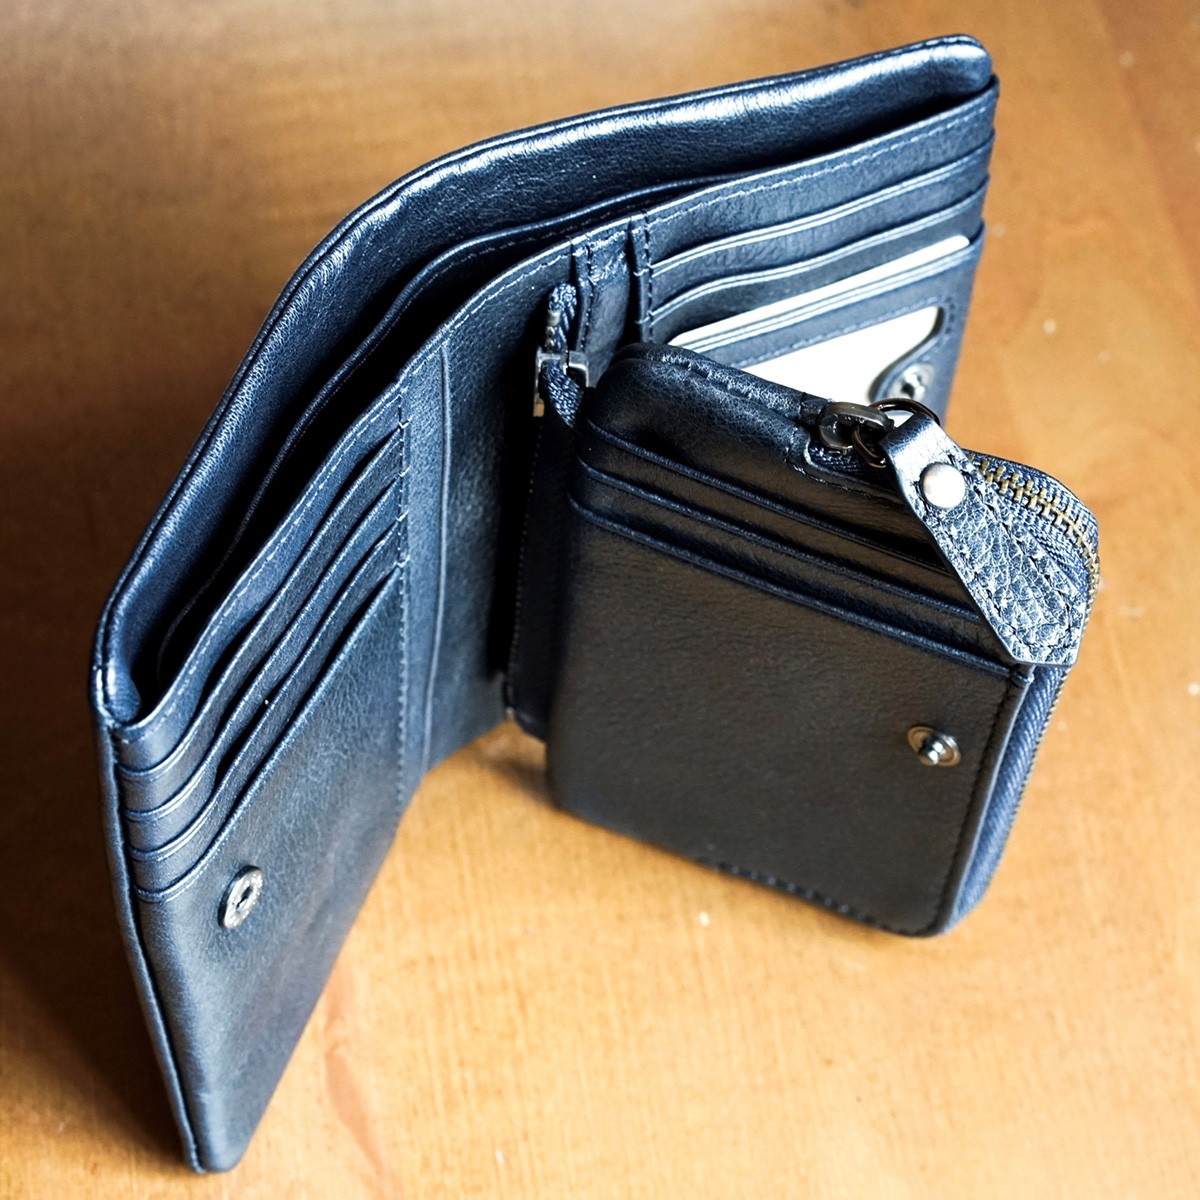 ZONALe 財布 ゾナール 二つ折り財布 2つ折り 本革 革 レザー メンズ